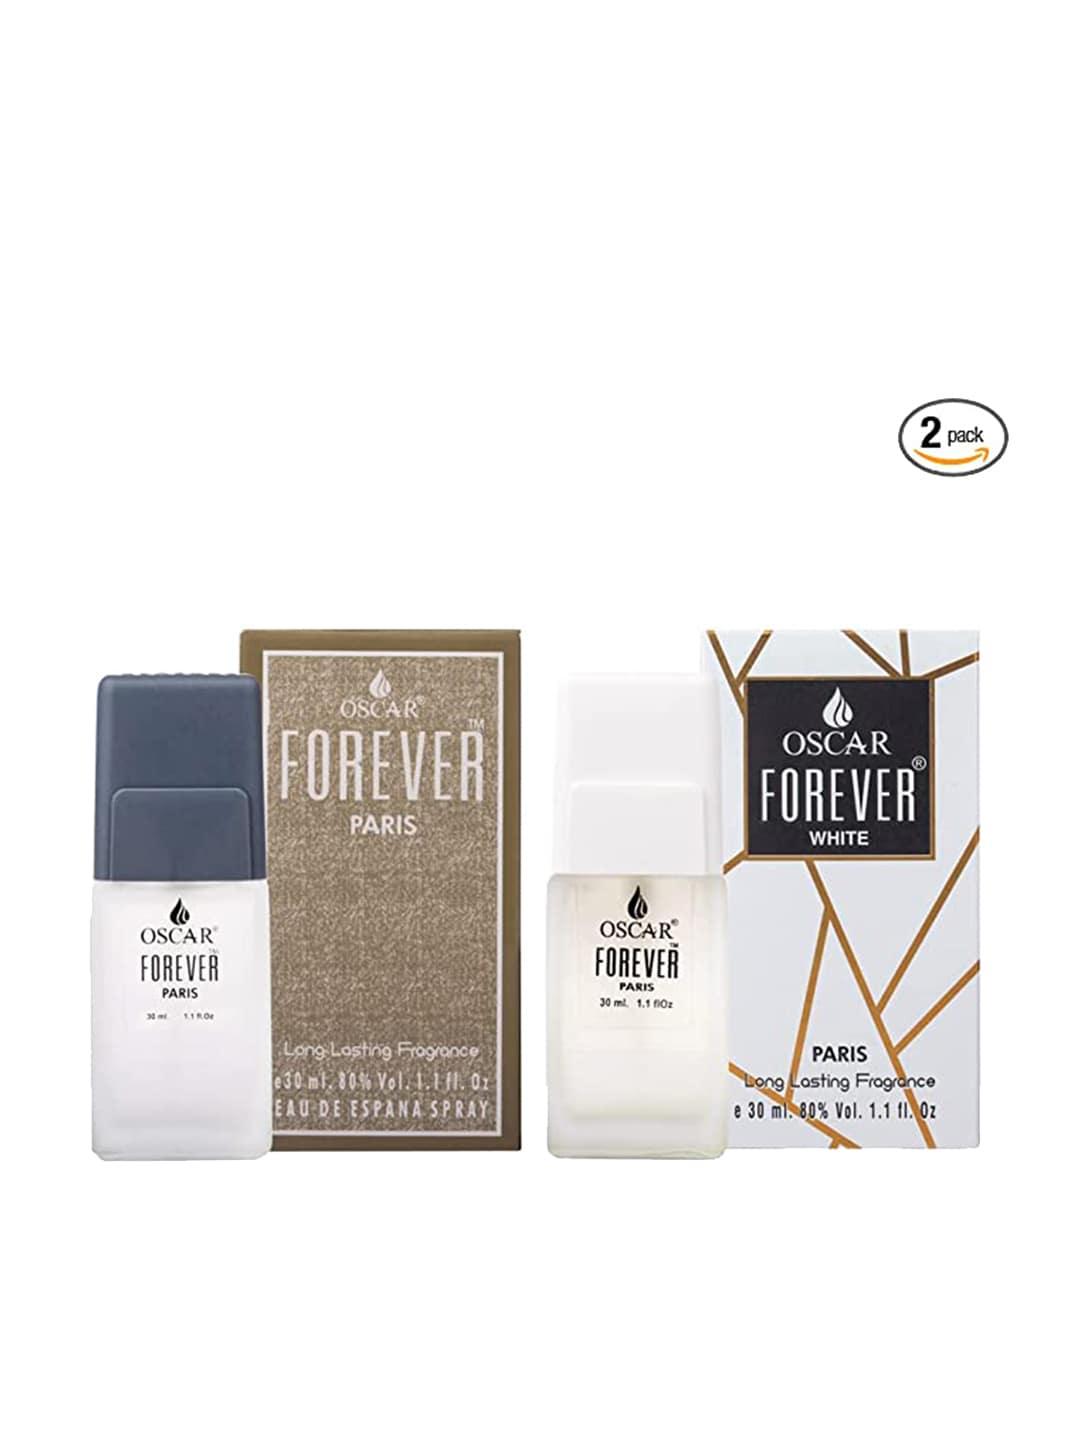 oscar set of 2 forever paris & forever white long lasting eau de parfum - 30 ml each